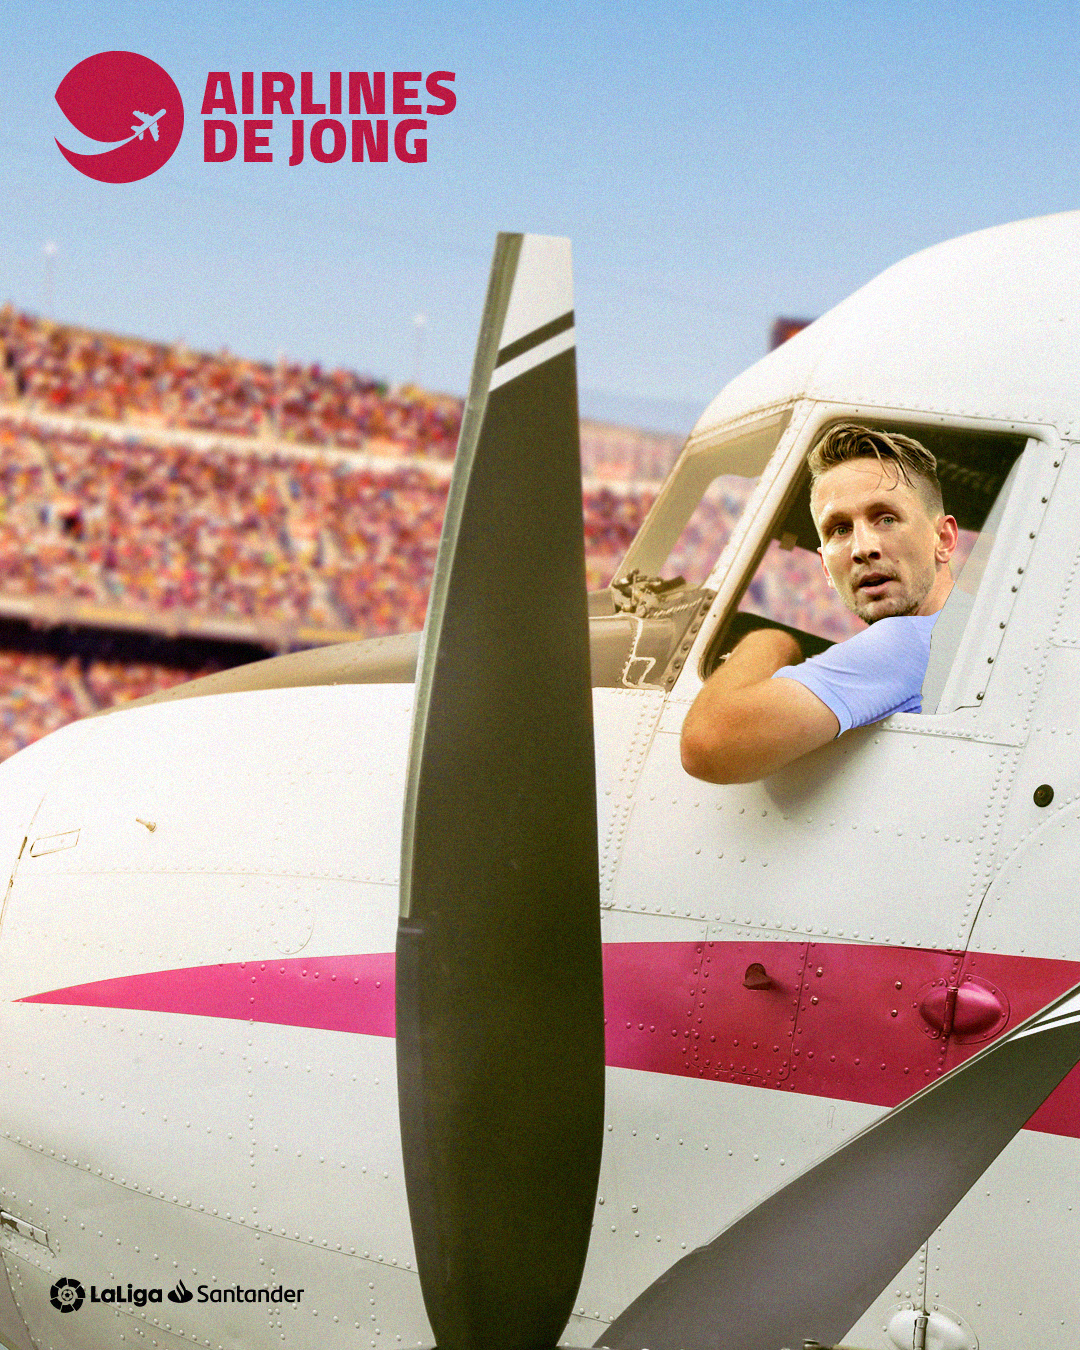 GRAPHIC_<a href='/players/luuk-de-jong'>Luuk de Jong</a> 'airlines'.jpg